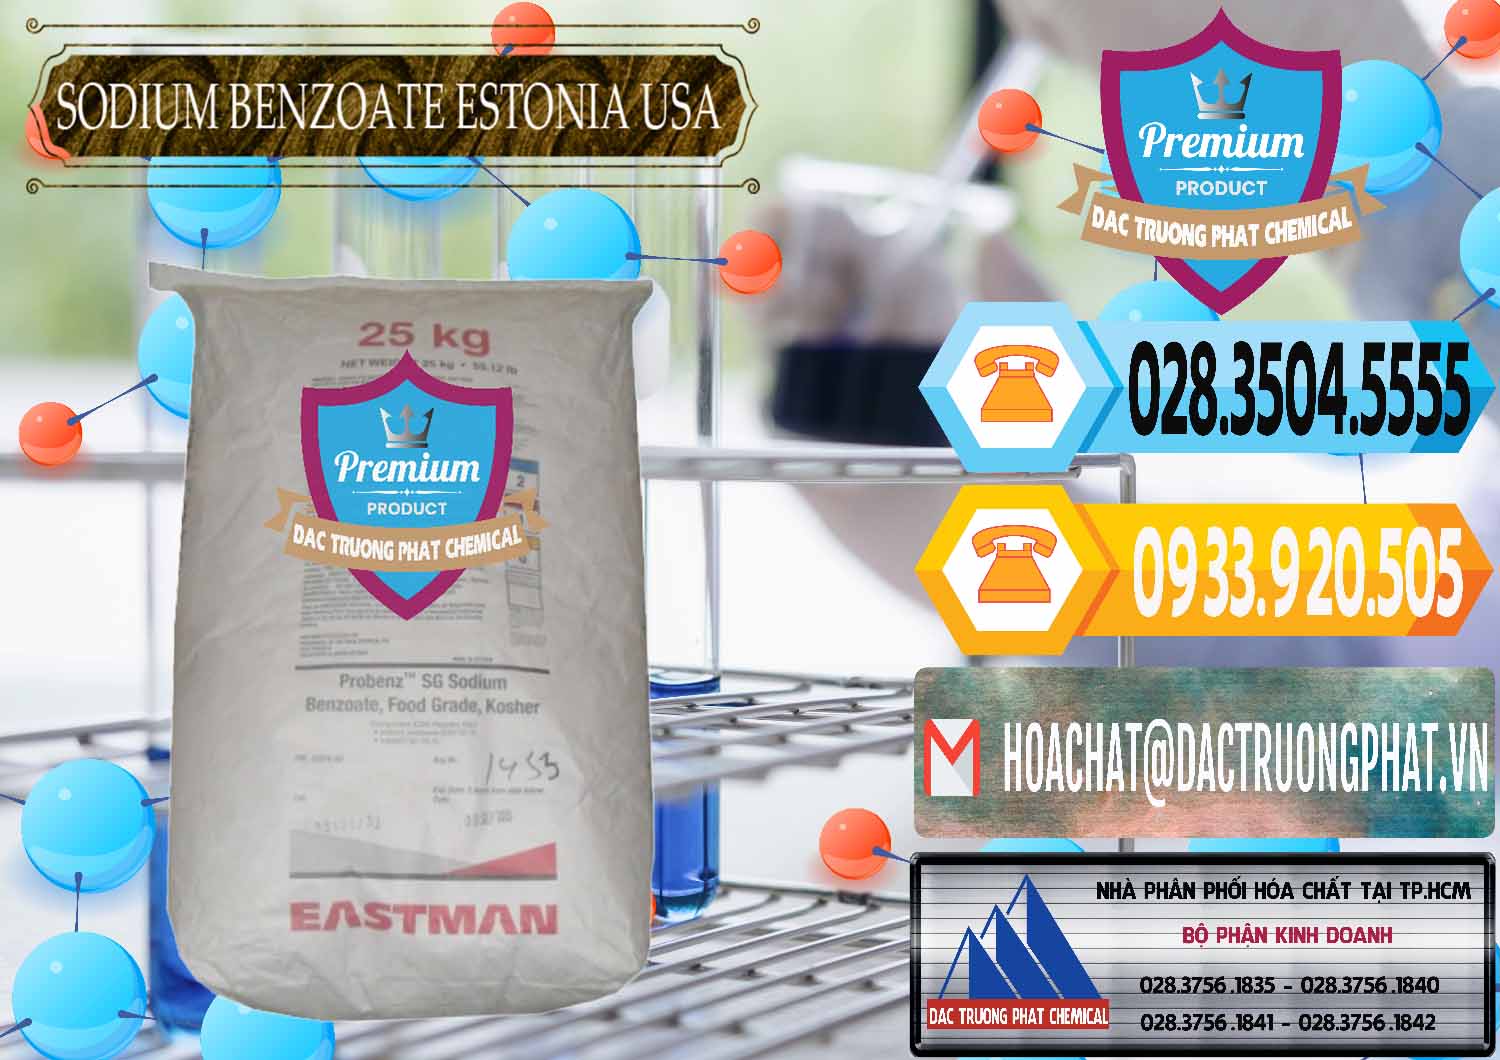 Chuyên nhập khẩu và bán Sodium Benzoate - Mốc Bột Estonia Mỹ USA - 0468 - Nơi chuyên phân phối ( kinh doanh ) hóa chất tại TP.HCM - hoachattayrua.net